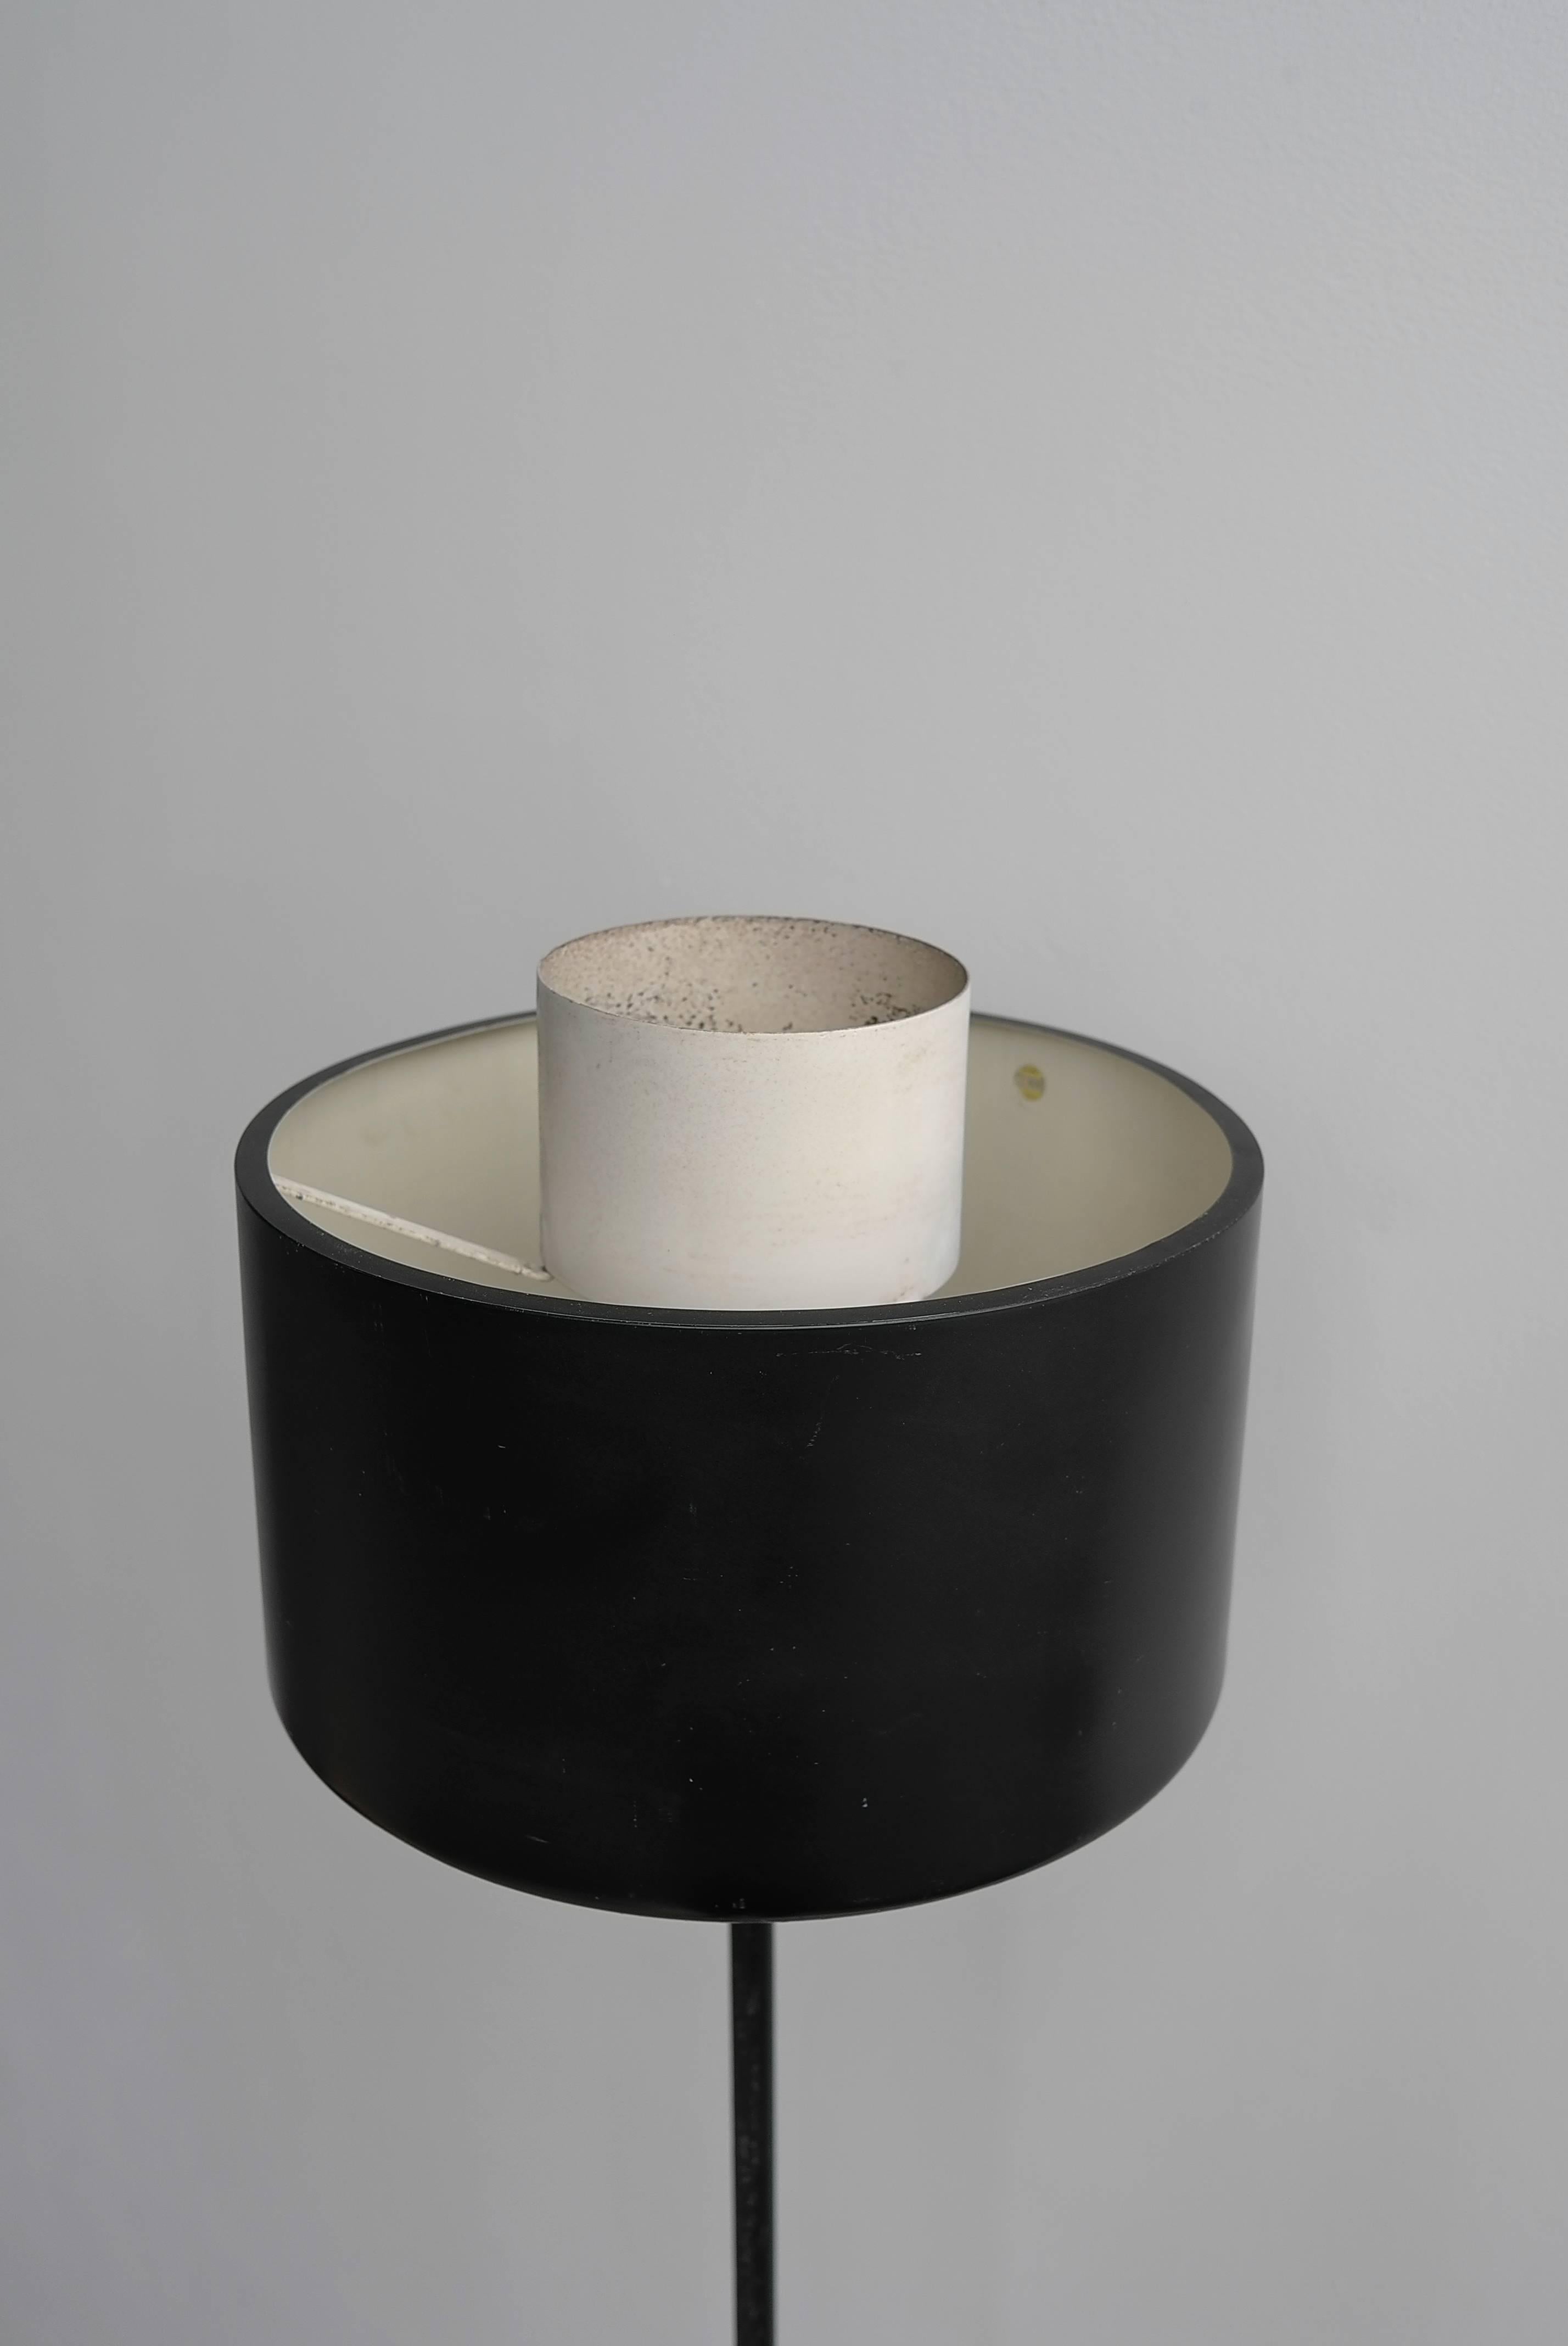 Seltene Stilnovo-Stehleuchte von Gaetano Sciolari, Italien, 1954. Typische minimalistische, modernistische Stilnovo-Lampe mit einem schwarz-weiß lackierten Aluminiumschirm, einfach in der Form, weniger ist mehr. Stilnovo-Aufkleber im Inneren des